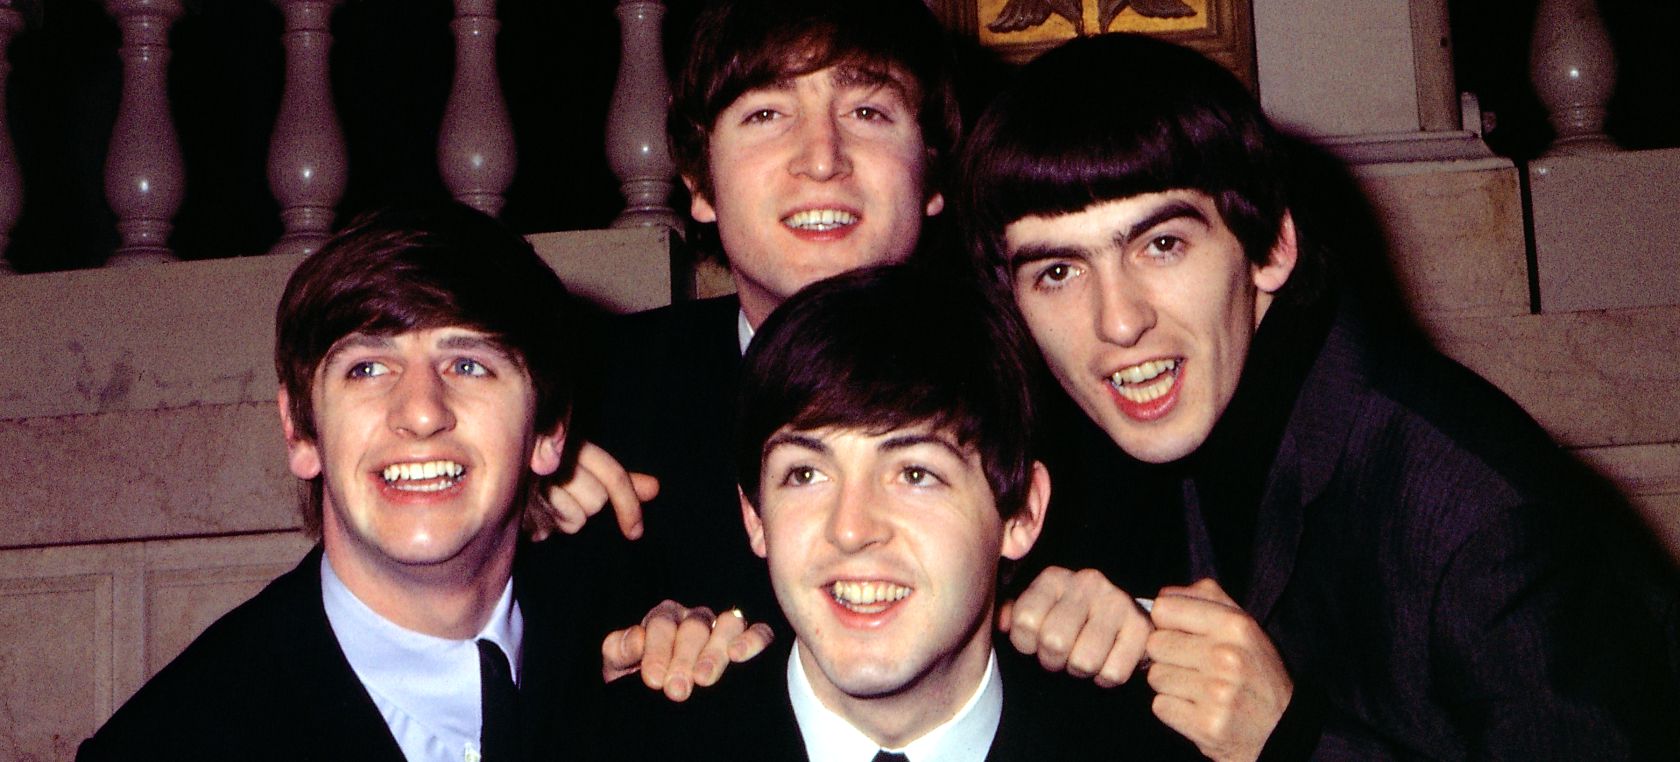 La última sesión de fotos de The Beatles: Dolorosa y con el ceño fruncido